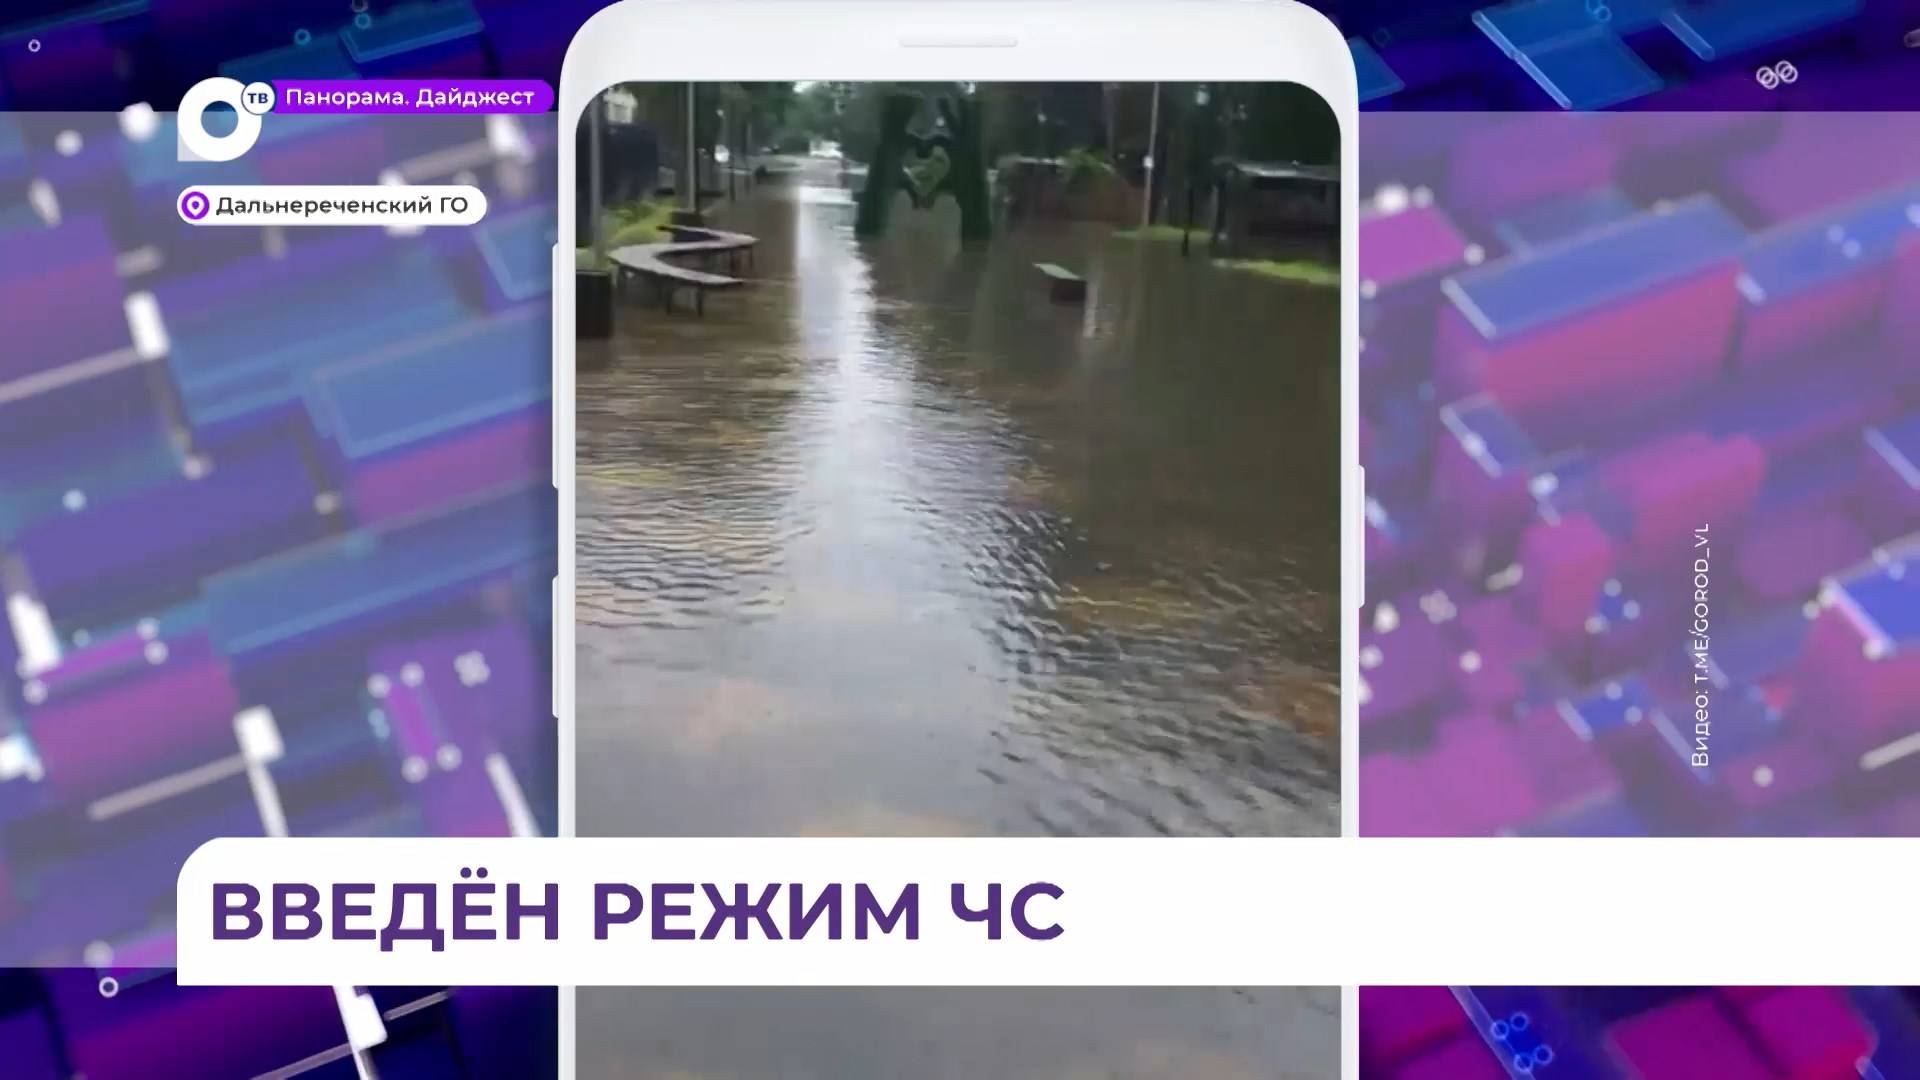 Режим ЧС введён из-за паводка в Дальнереченском округе Приморья